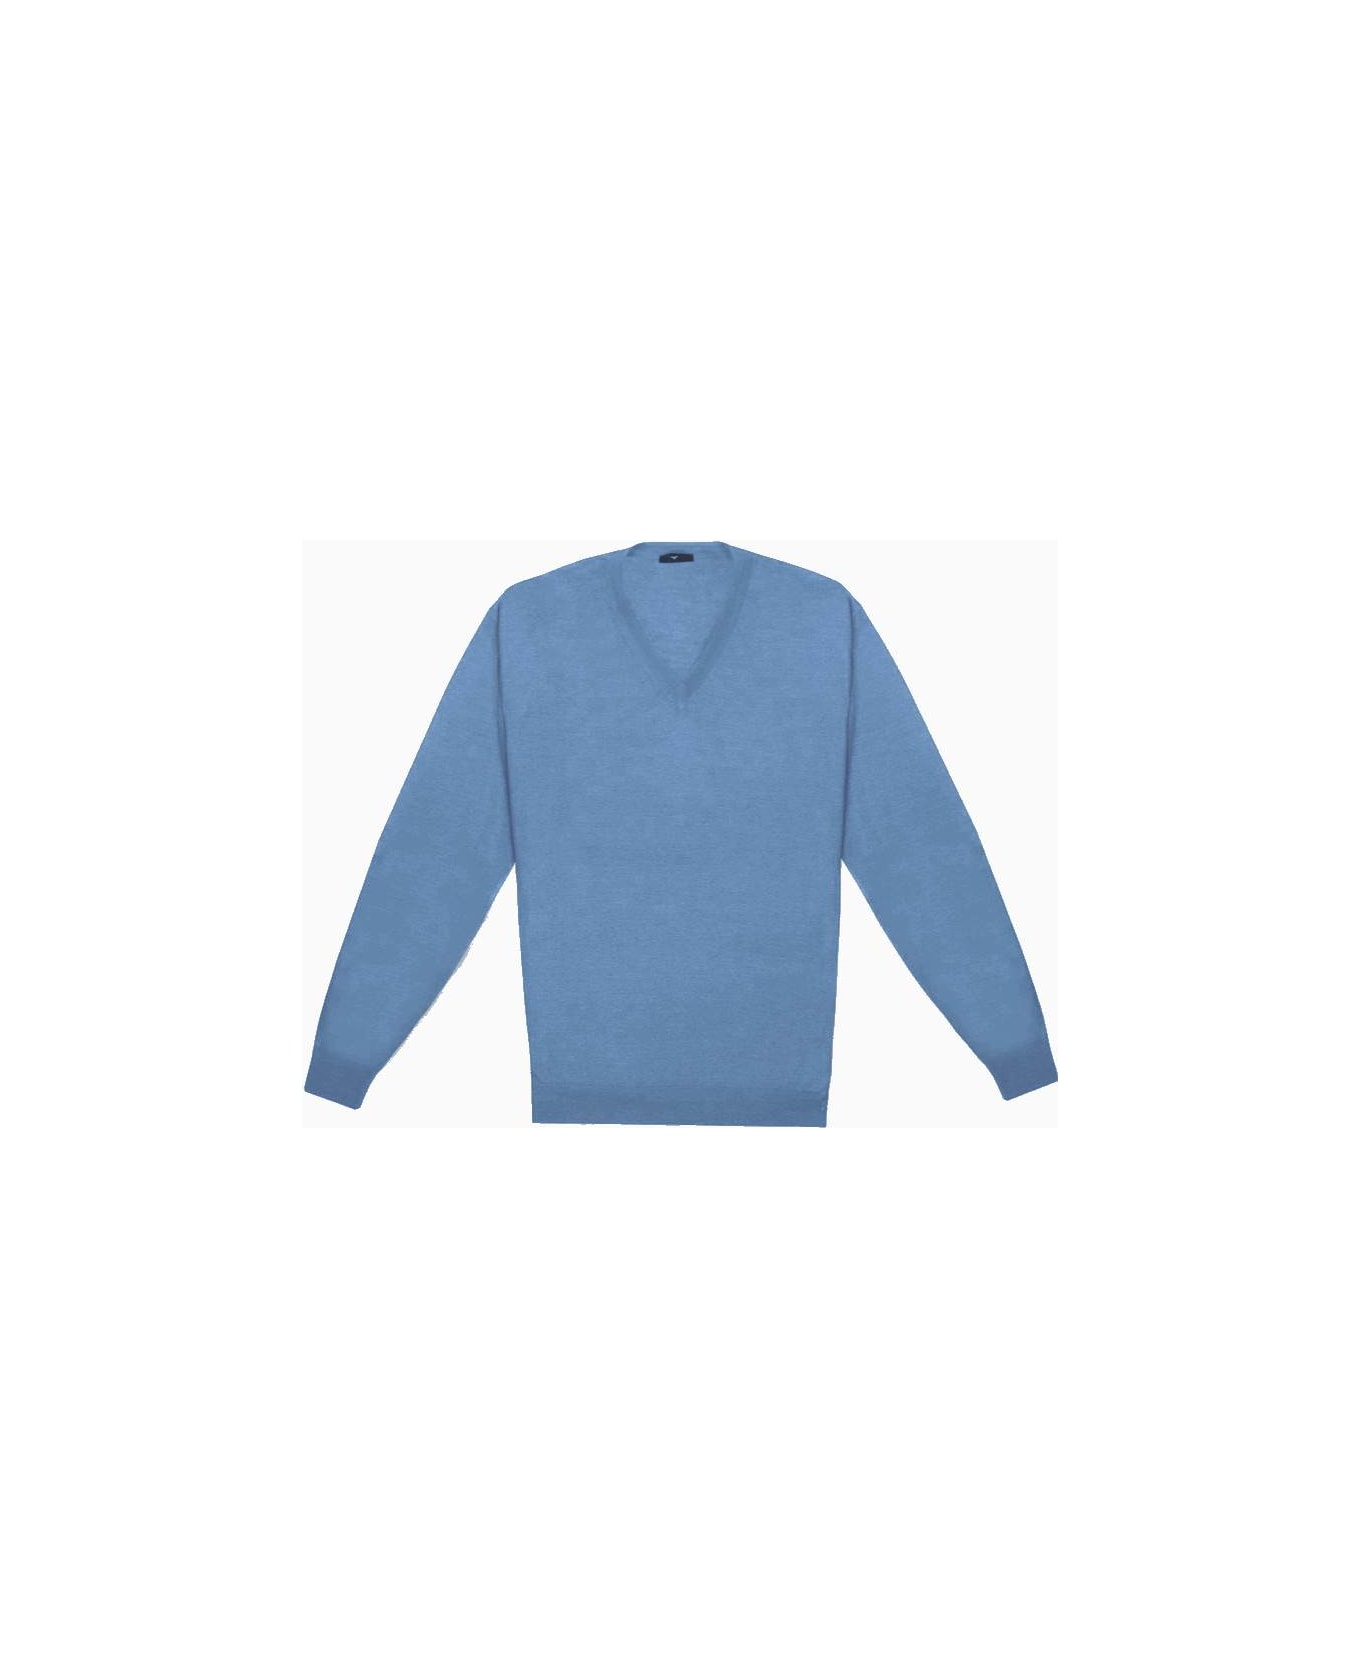 Larusmiani V-neck Sweater 'pullman' Sweater - LightBlue フリース